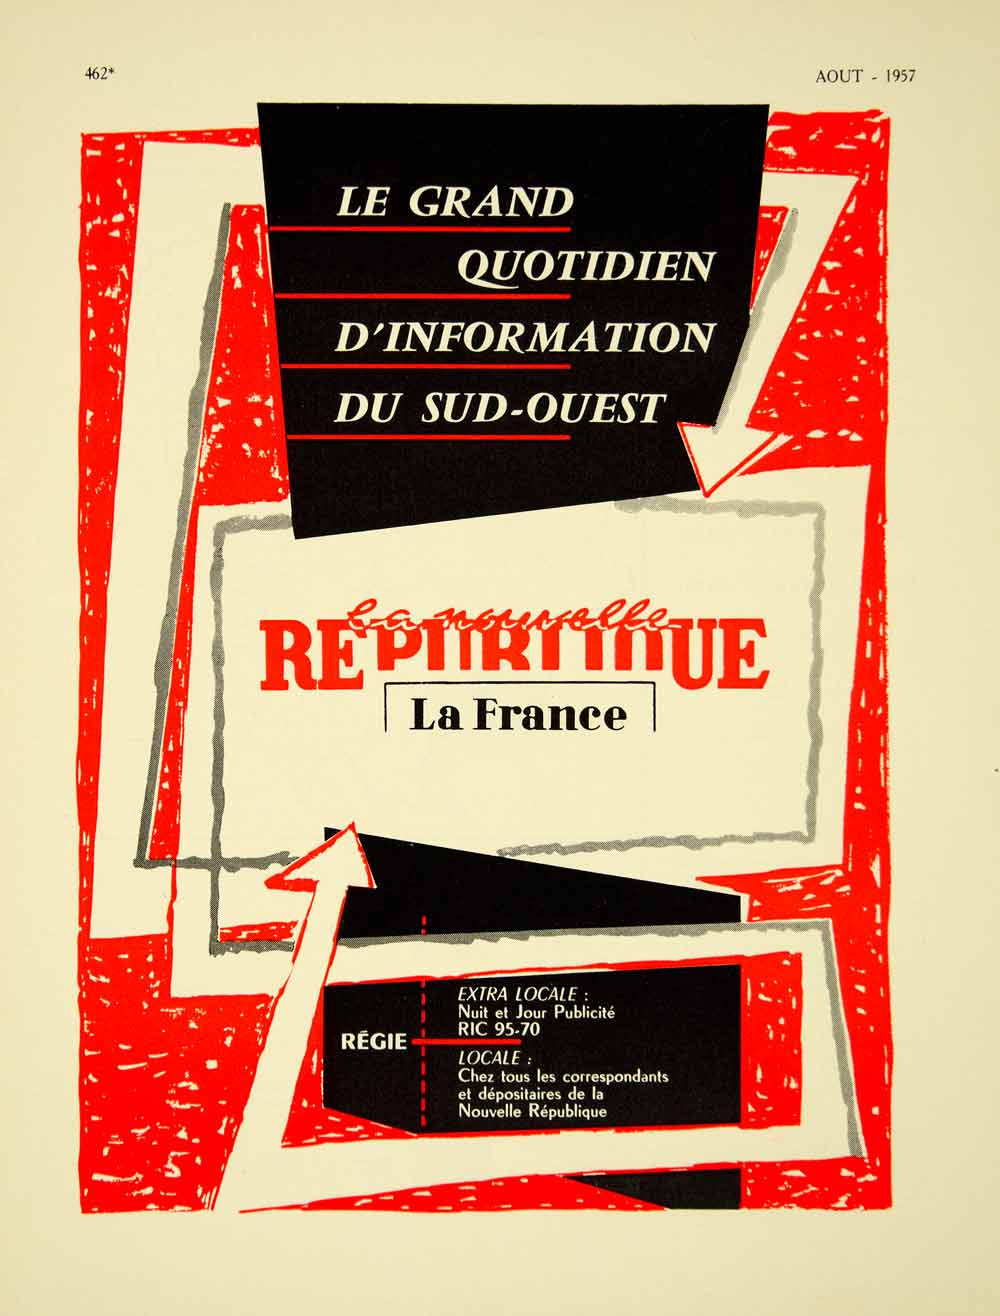 1957 Ad French Advertisement La Nouvelle Republique Newspaper France Regie VENA6